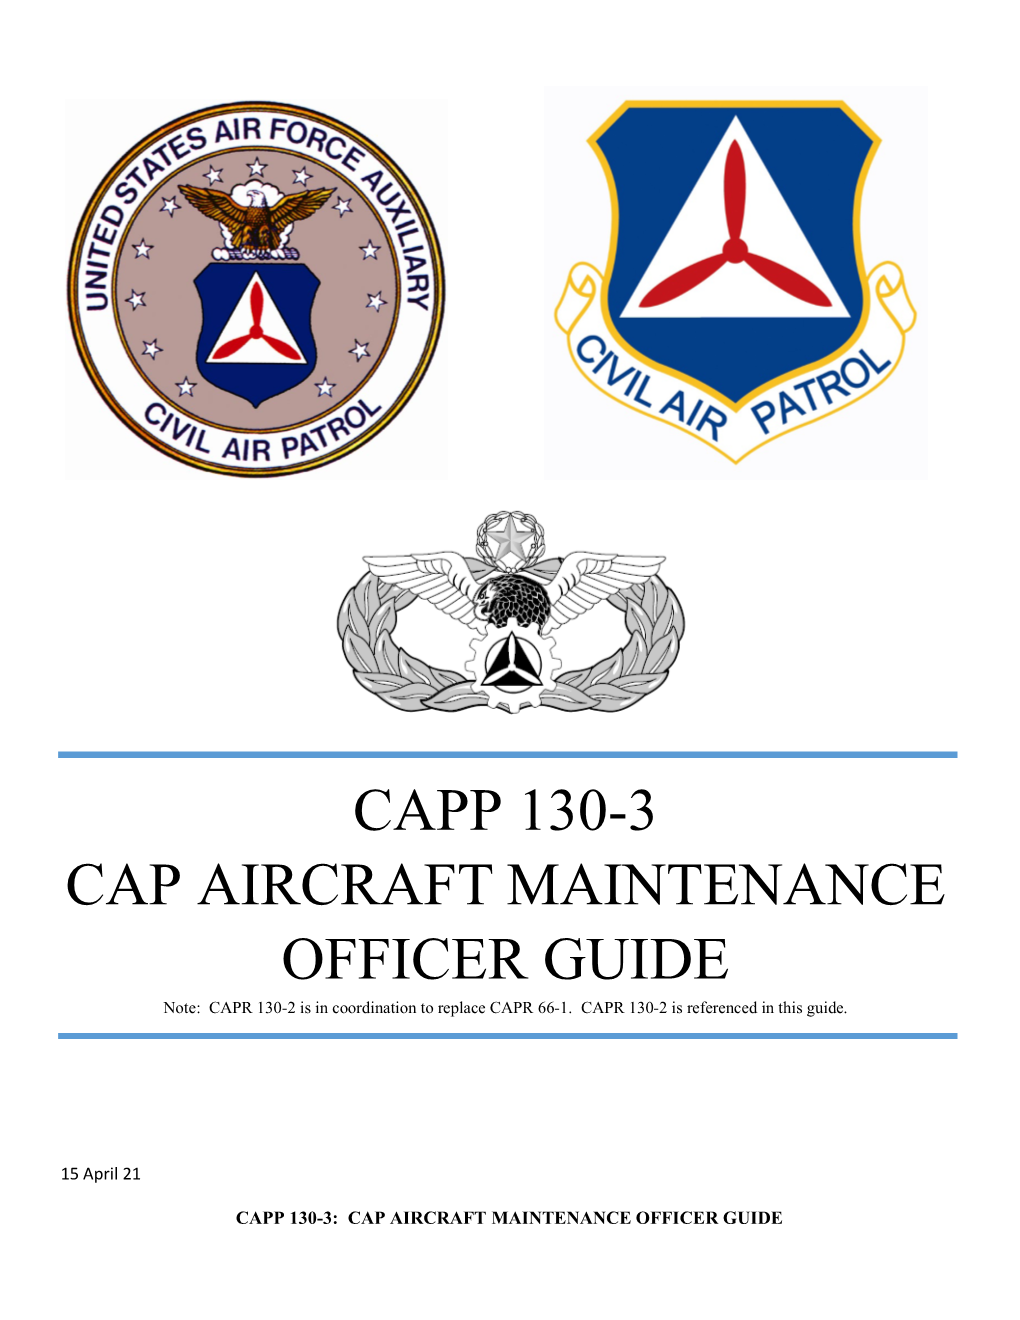 Capp 130-3 Cap Aircraft Maintenance Officer Guide